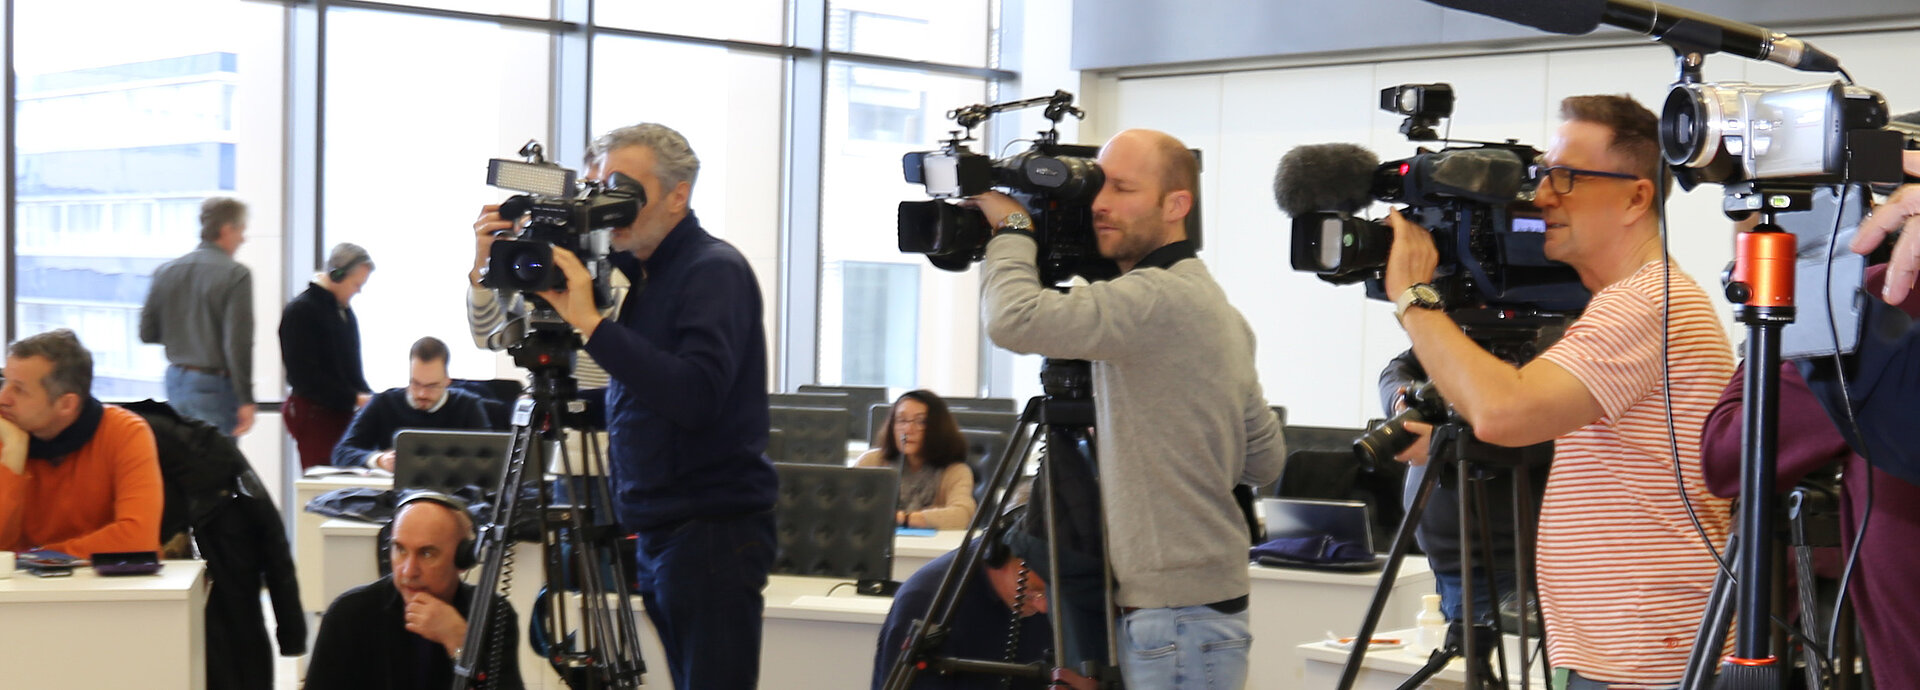 Journalisten mit Mikrofons und Kameras bei einer Pressekonferenz. 